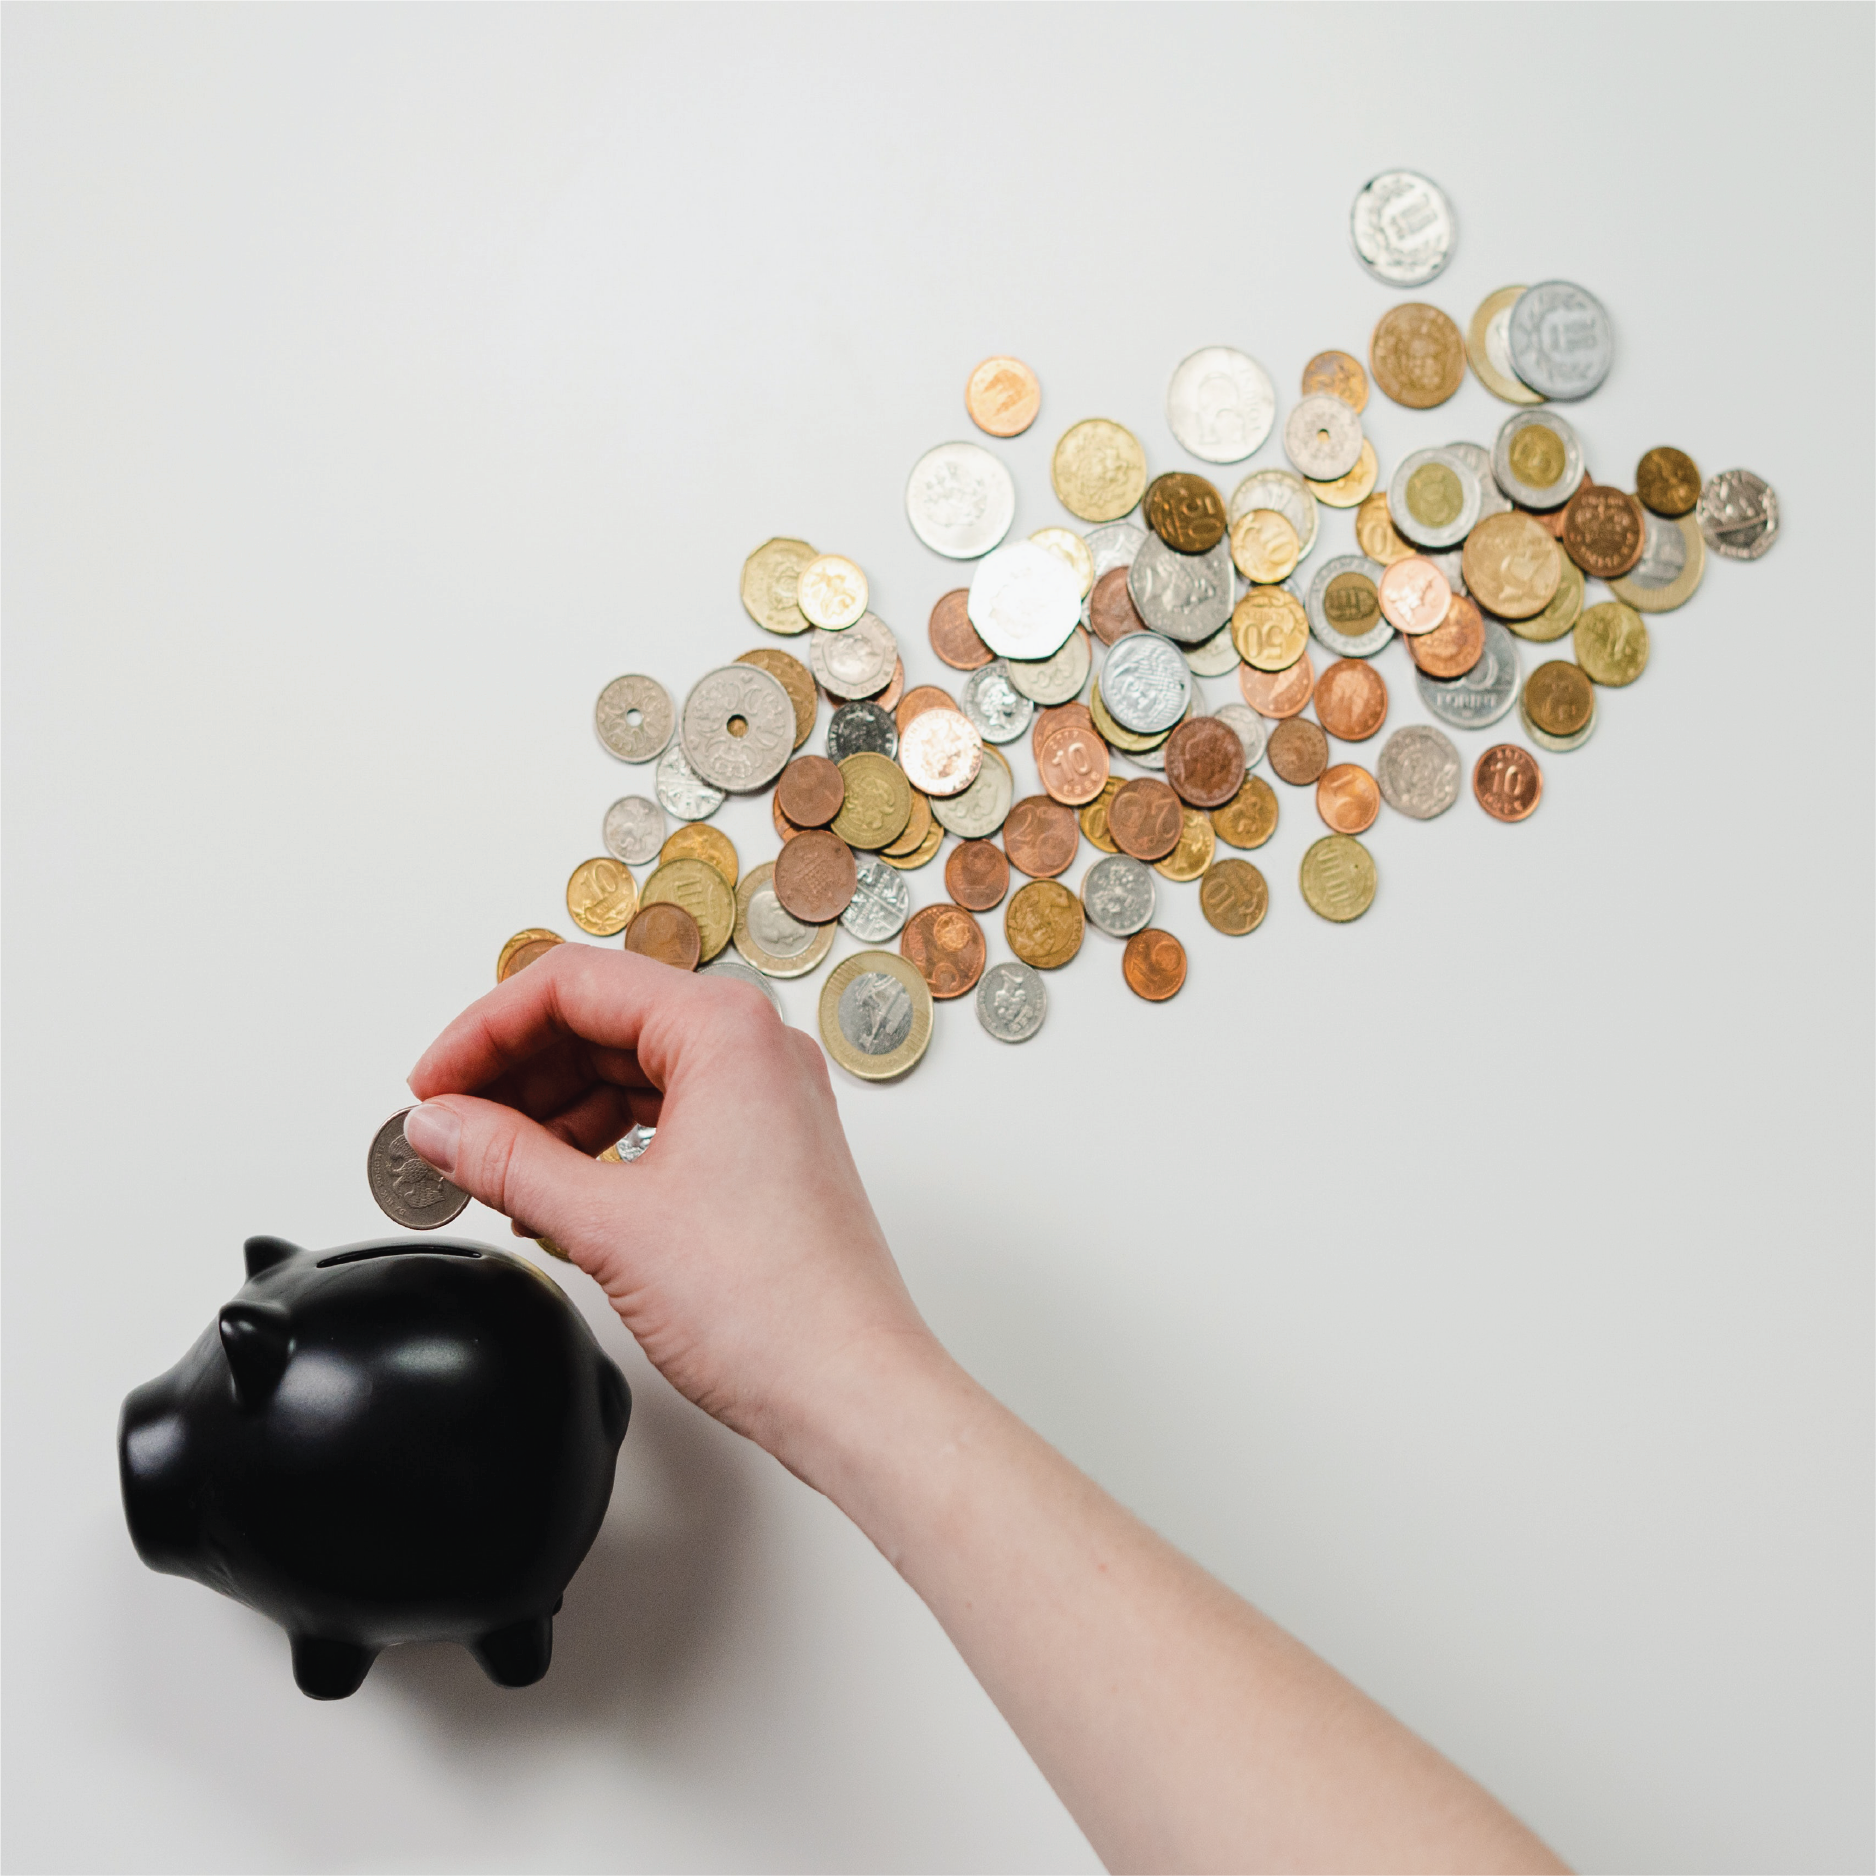 5 saving fund ideas to explore